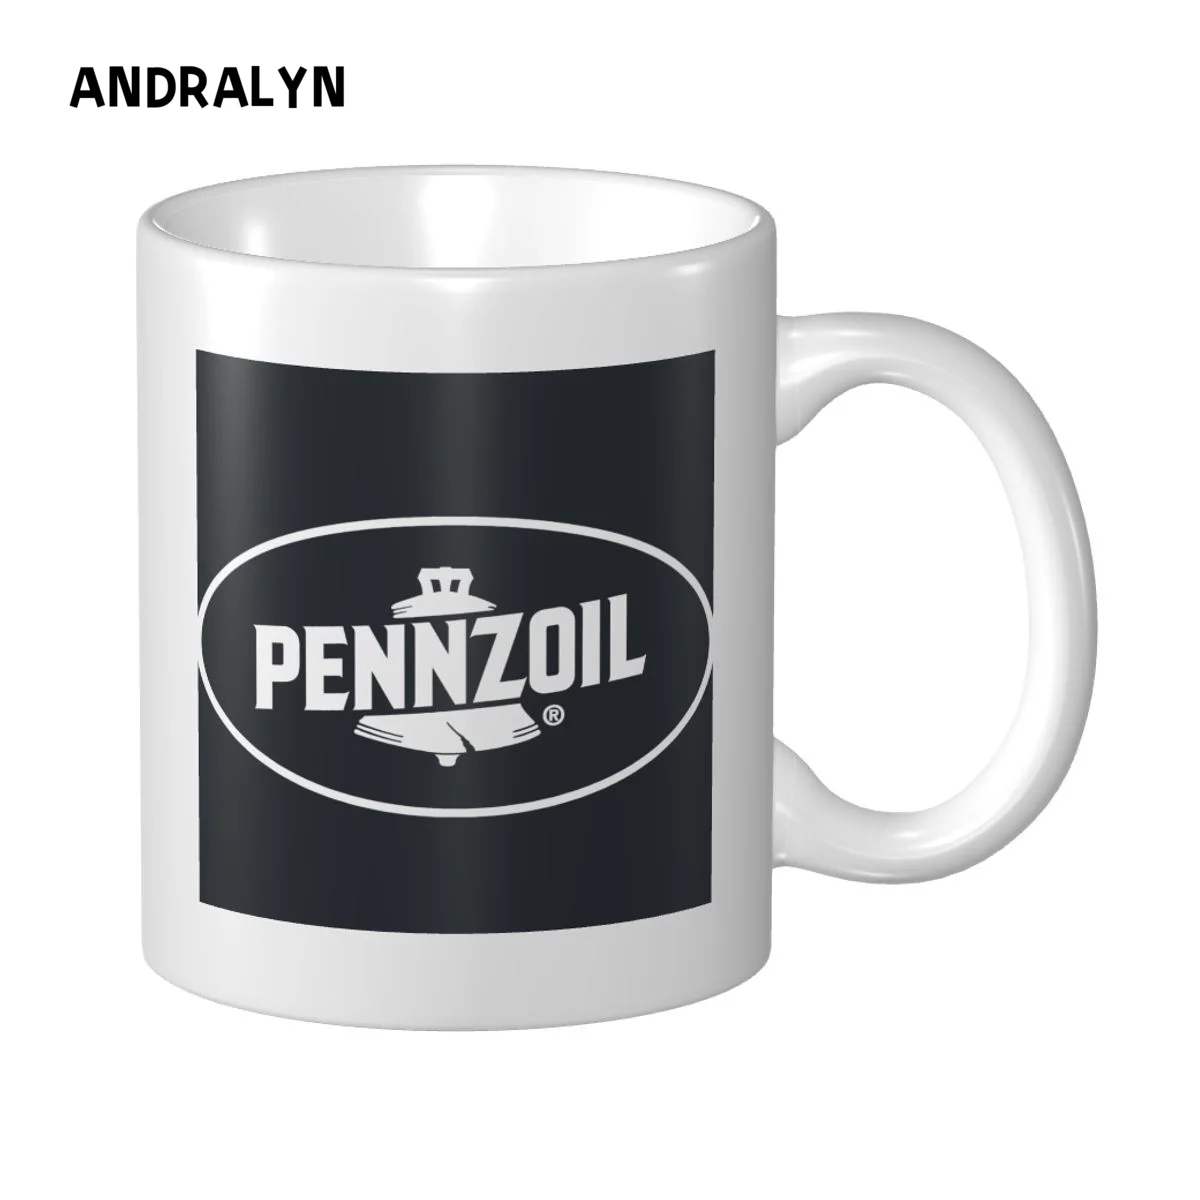 

Керамическая кружка с логотипом Pennzoil 10 унций, персонализированная печать изображений, фото, логотип, текст